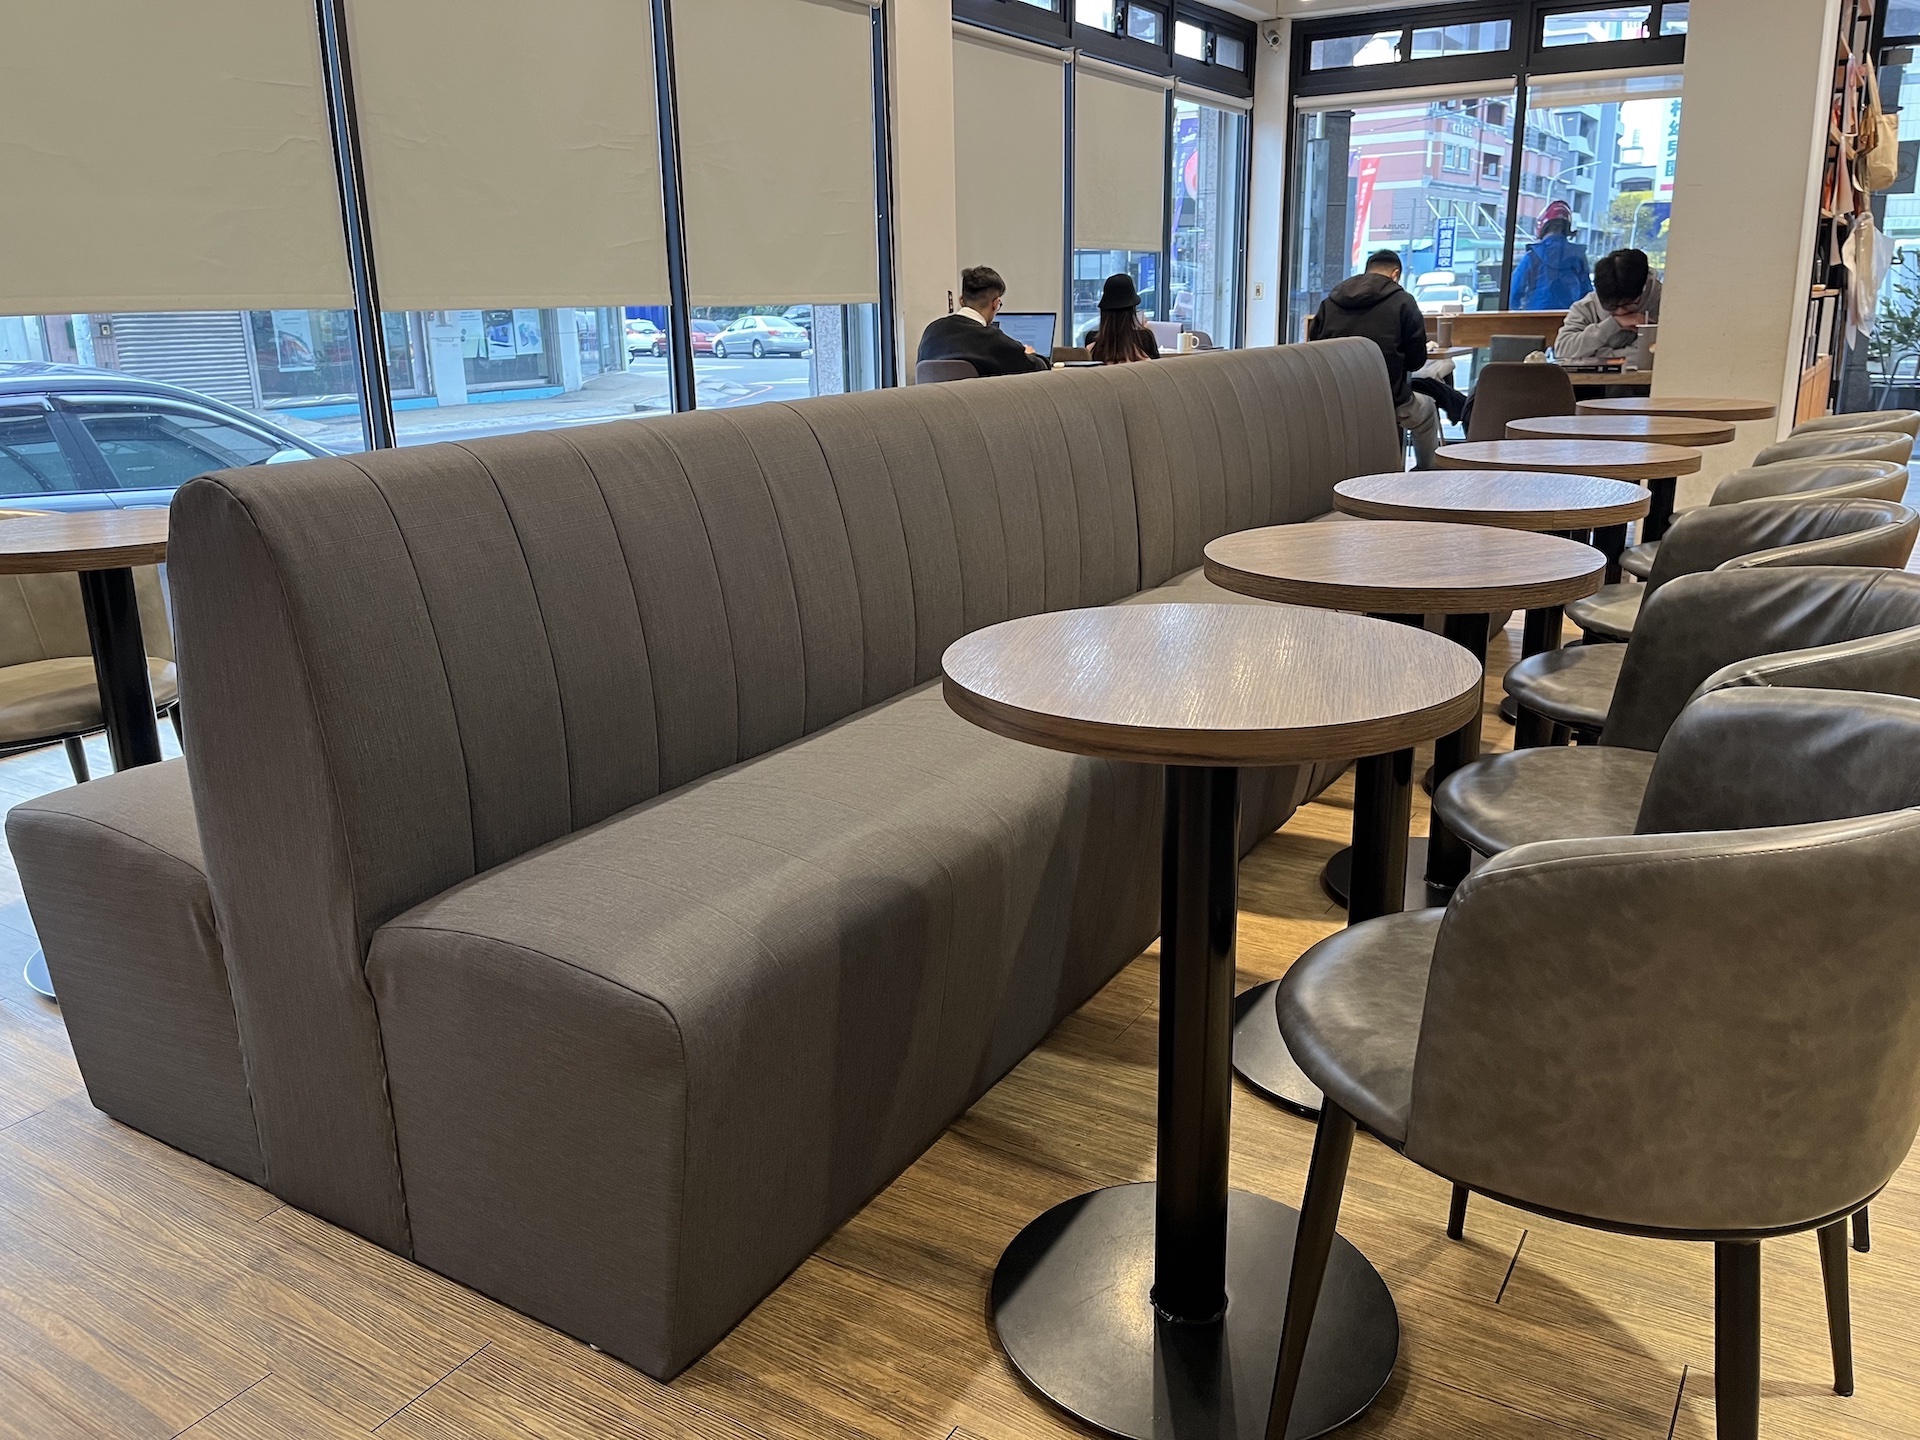 【客戶案例分享】台中東區咖啡廳坐墊更換貓抓皮